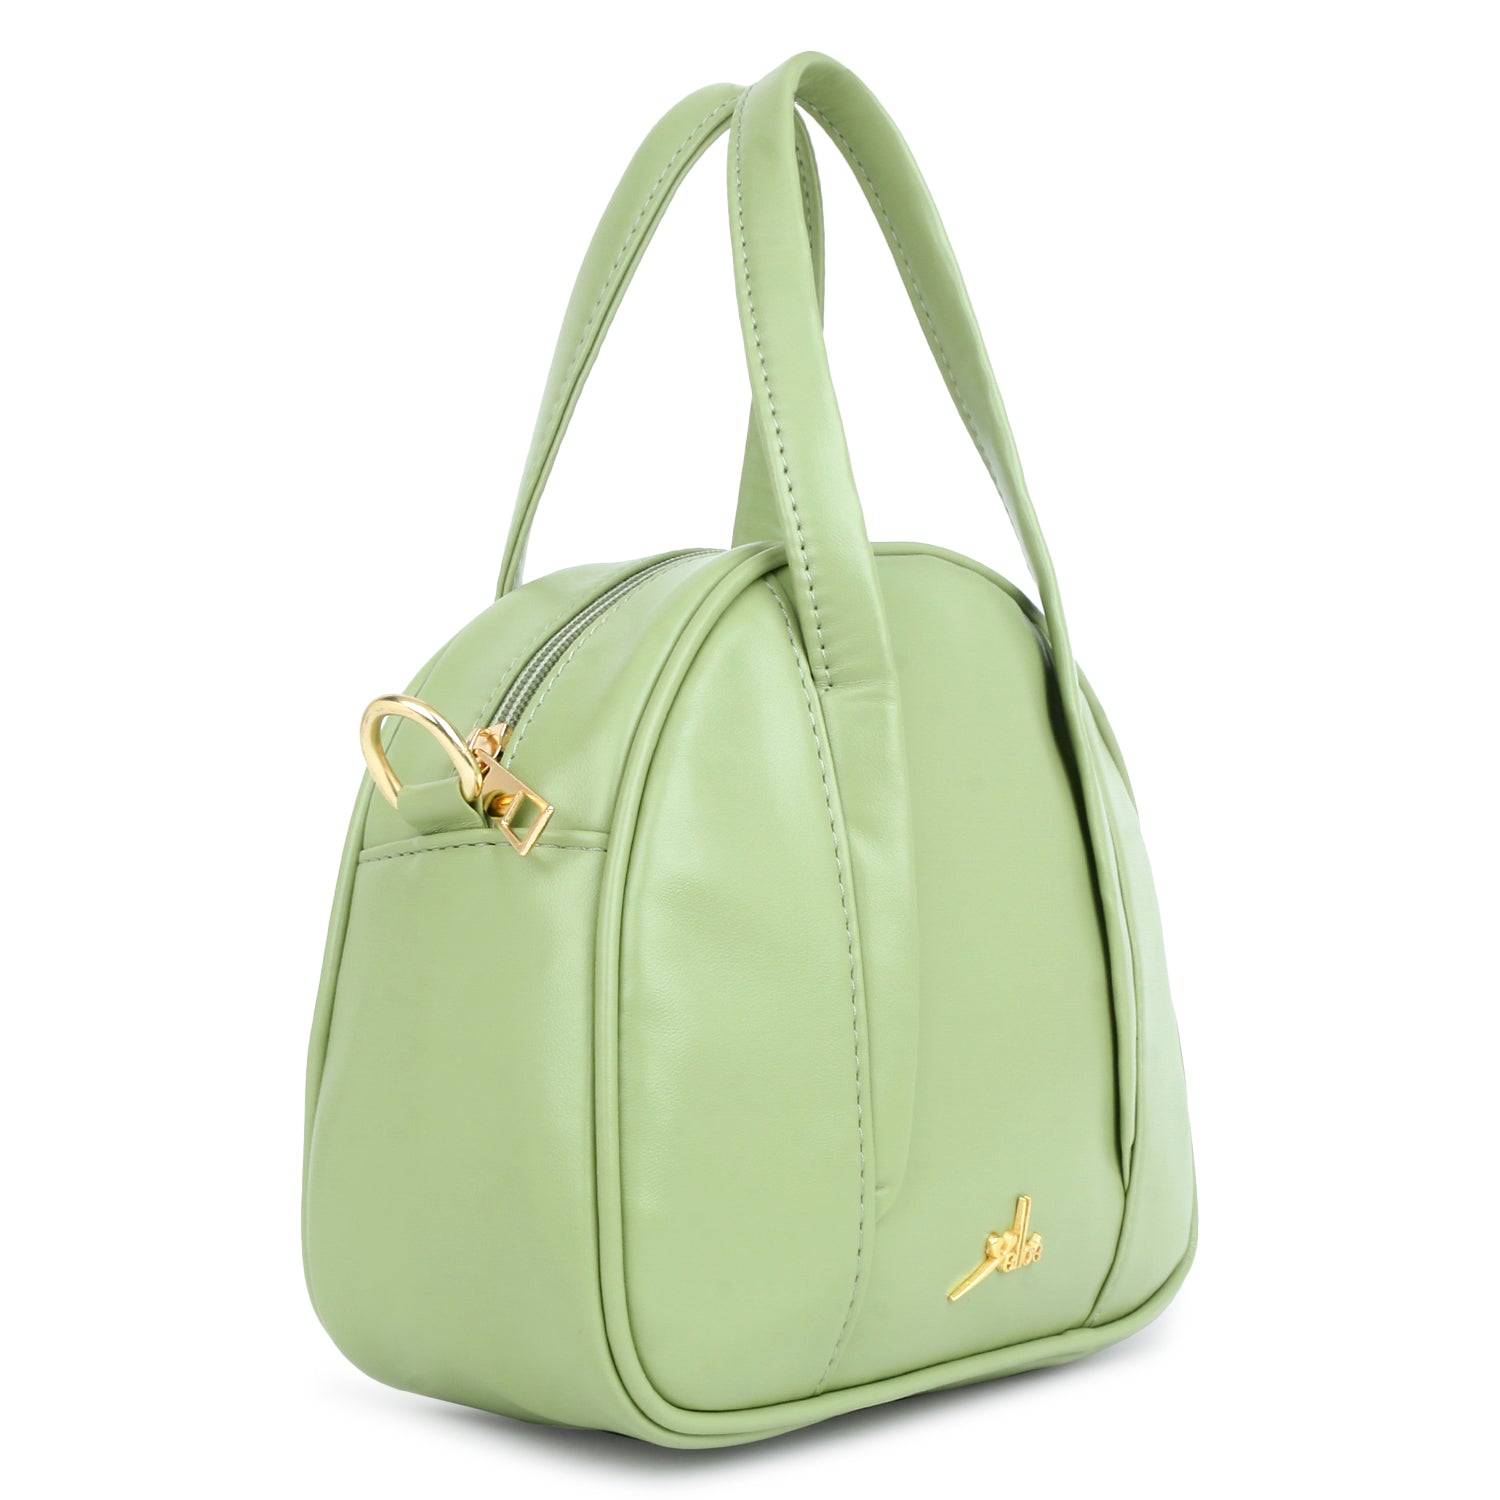 Evening Party Small Handbag in Green